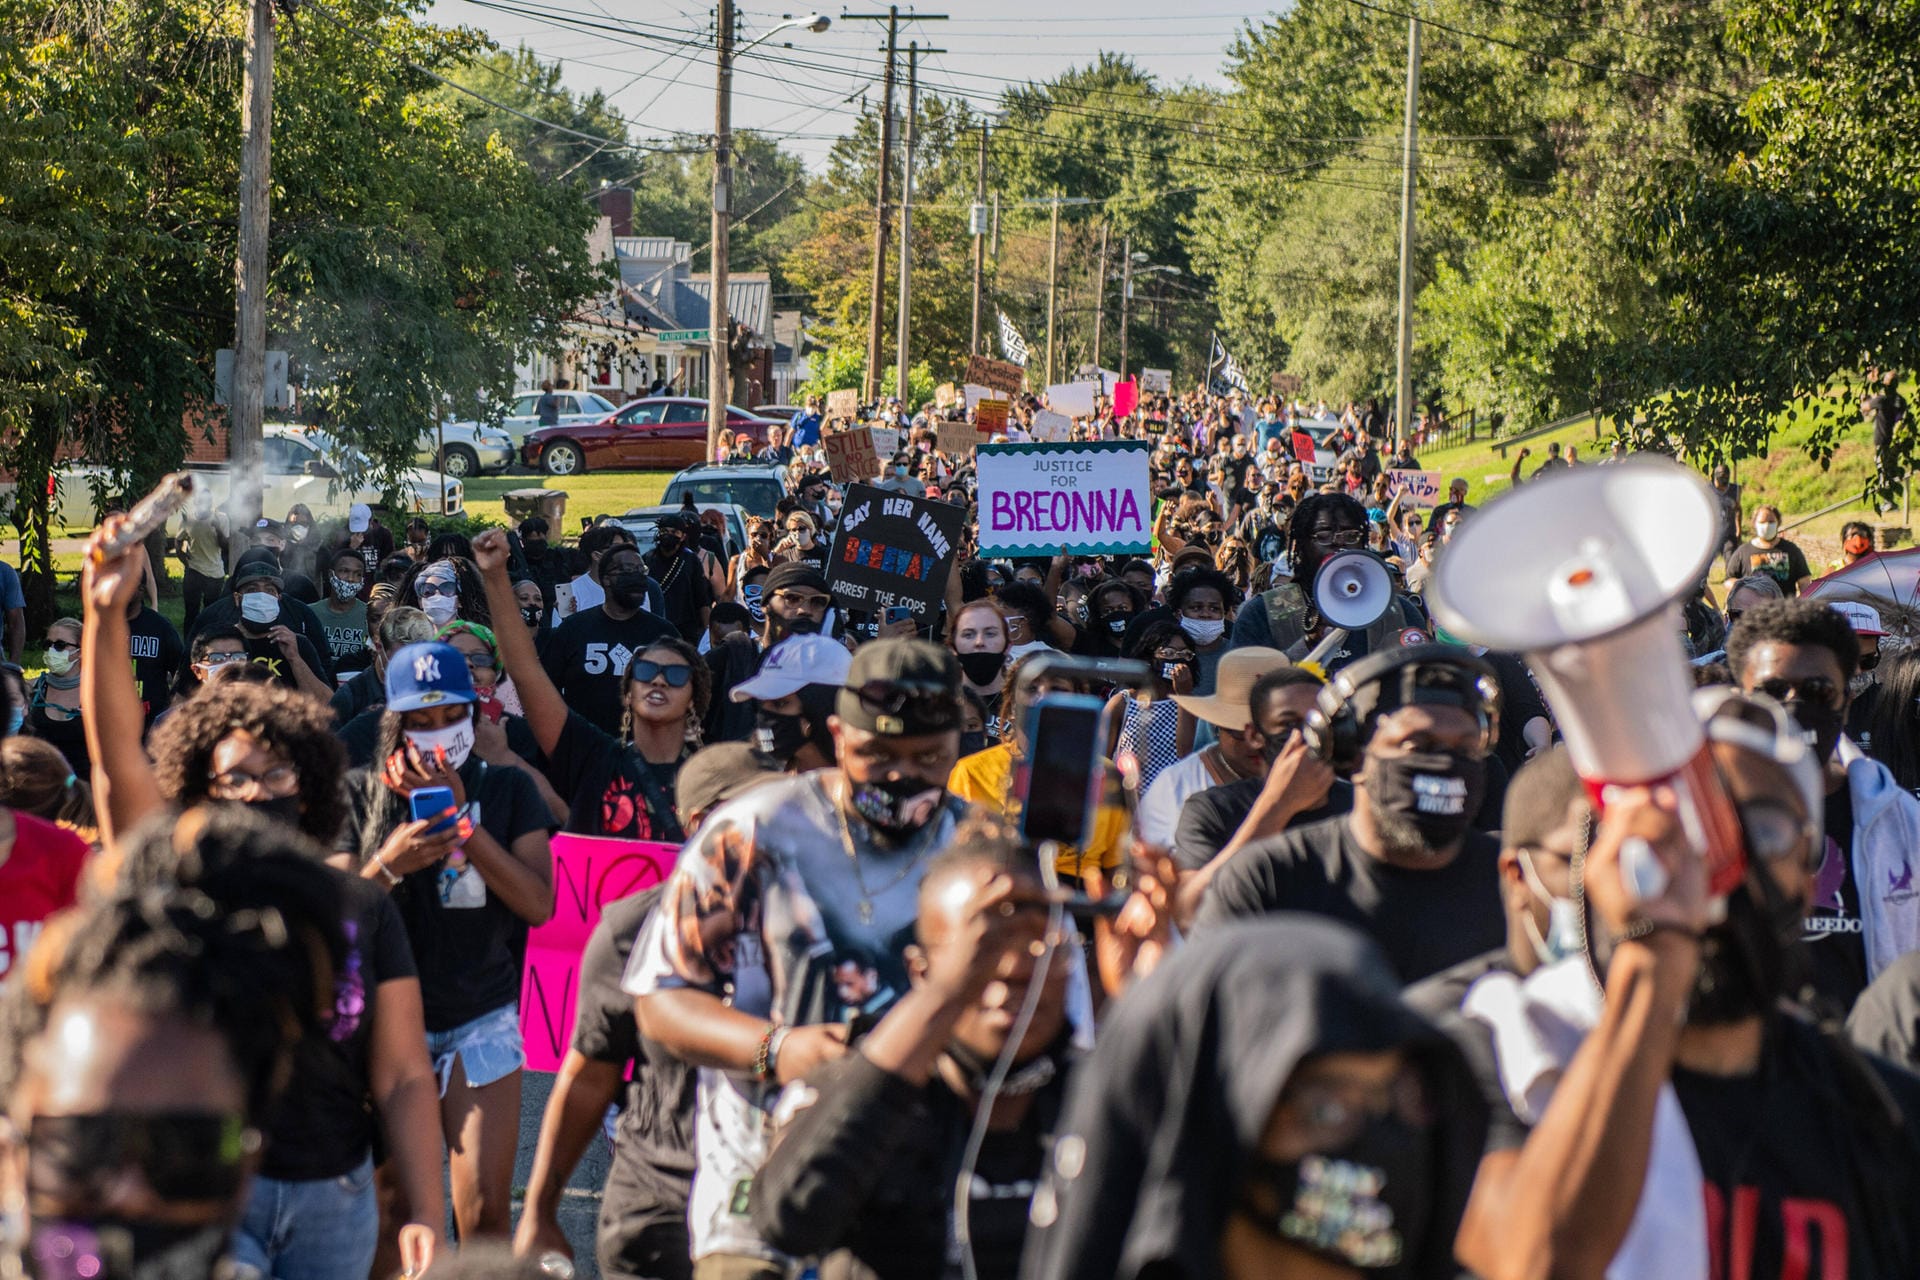 Neben Corona hat die USA auch mit Rassismus zu kämpfen: Eric Garner, George Floyd, Michael Brown, Daniel Prude, Breonna Taylor – die Liste an Schwarzen Menschen, die durch die US-Polizei ermordet wurden, ist lang. Dagegen gehen Menschen in anhaltenden Black-Lives-Matter-Demonstrationen auf die Straße.